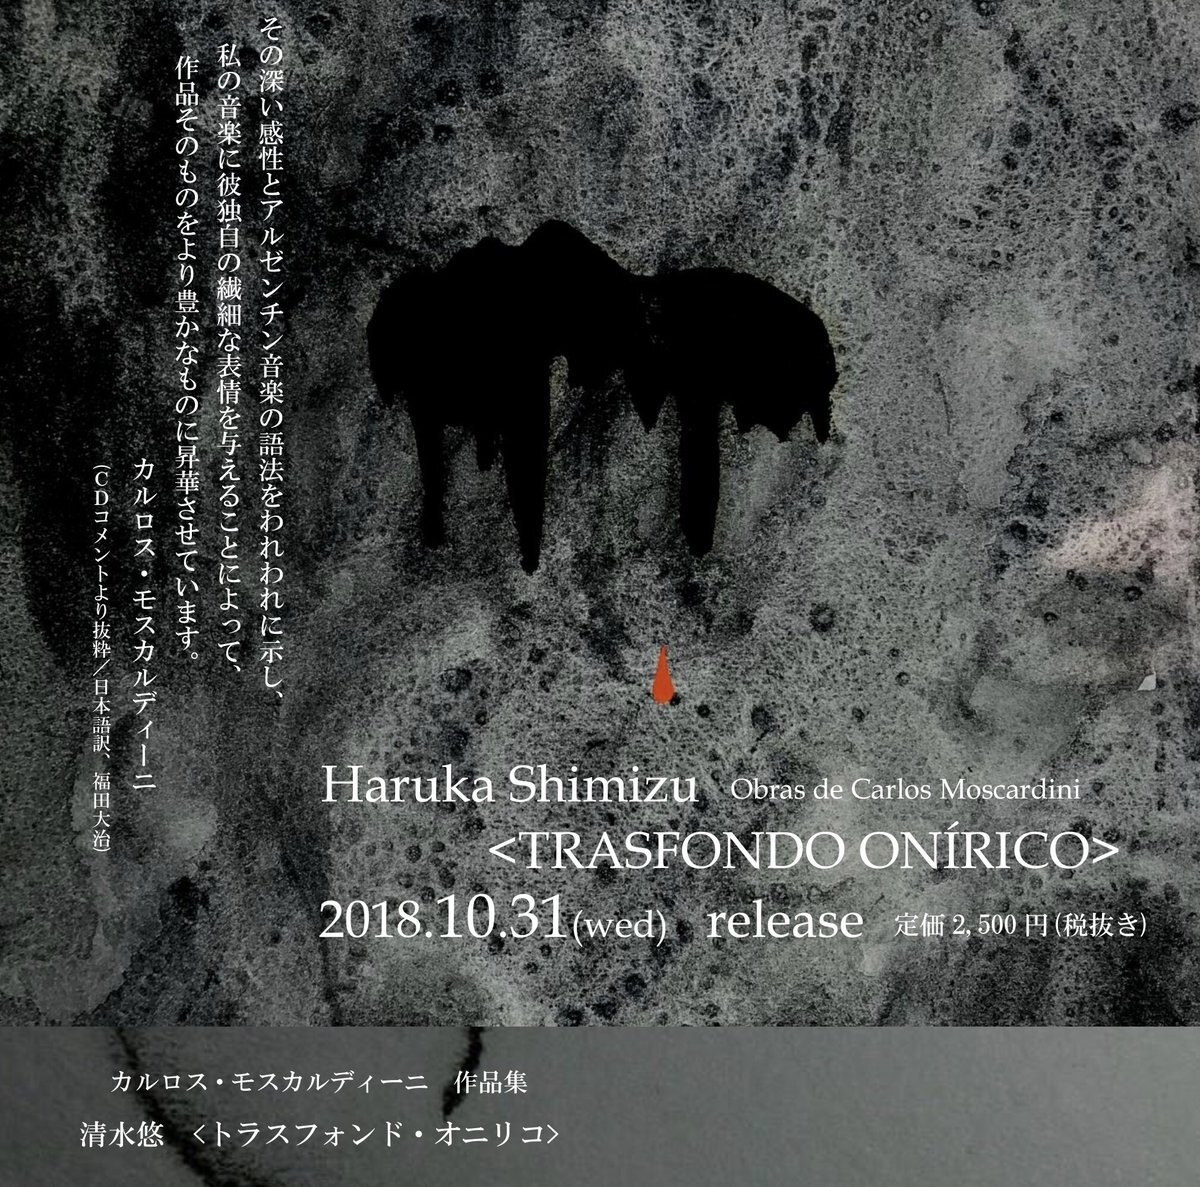 清水悠 Haruka Shimizu トラスフォンド オニリコ モスカルディーニ曲集 18 Papitamusica